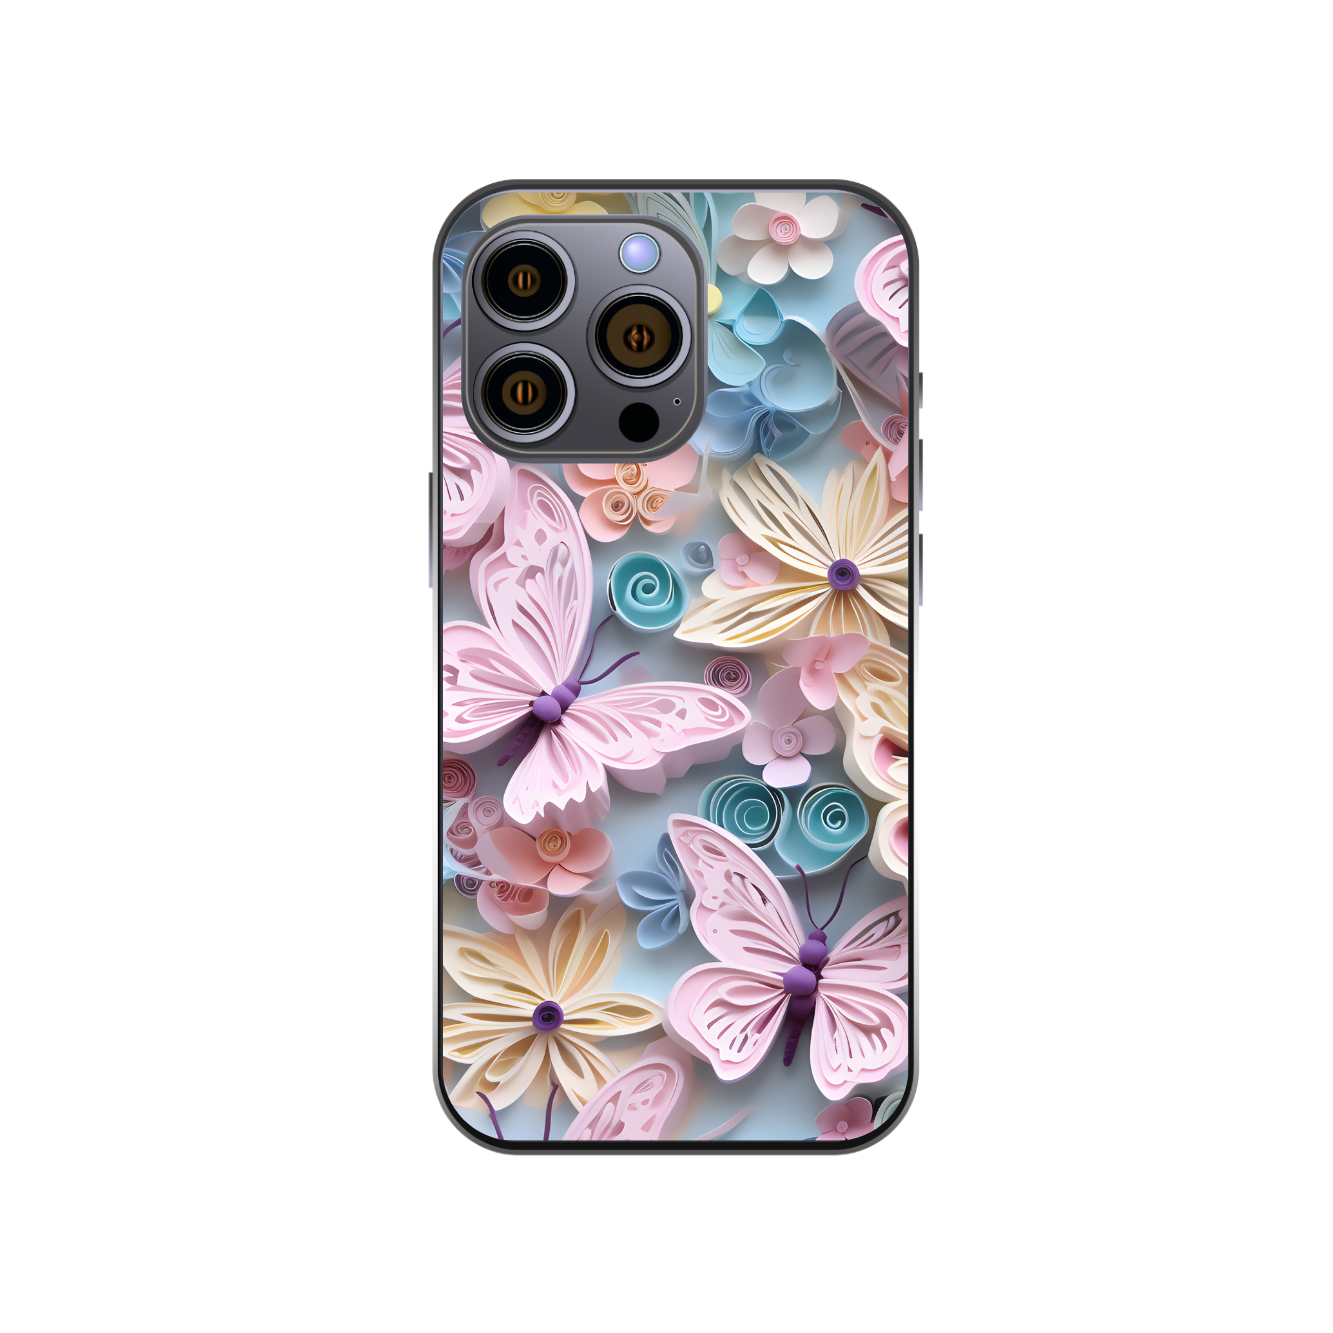 3D Butterflies Phone Case